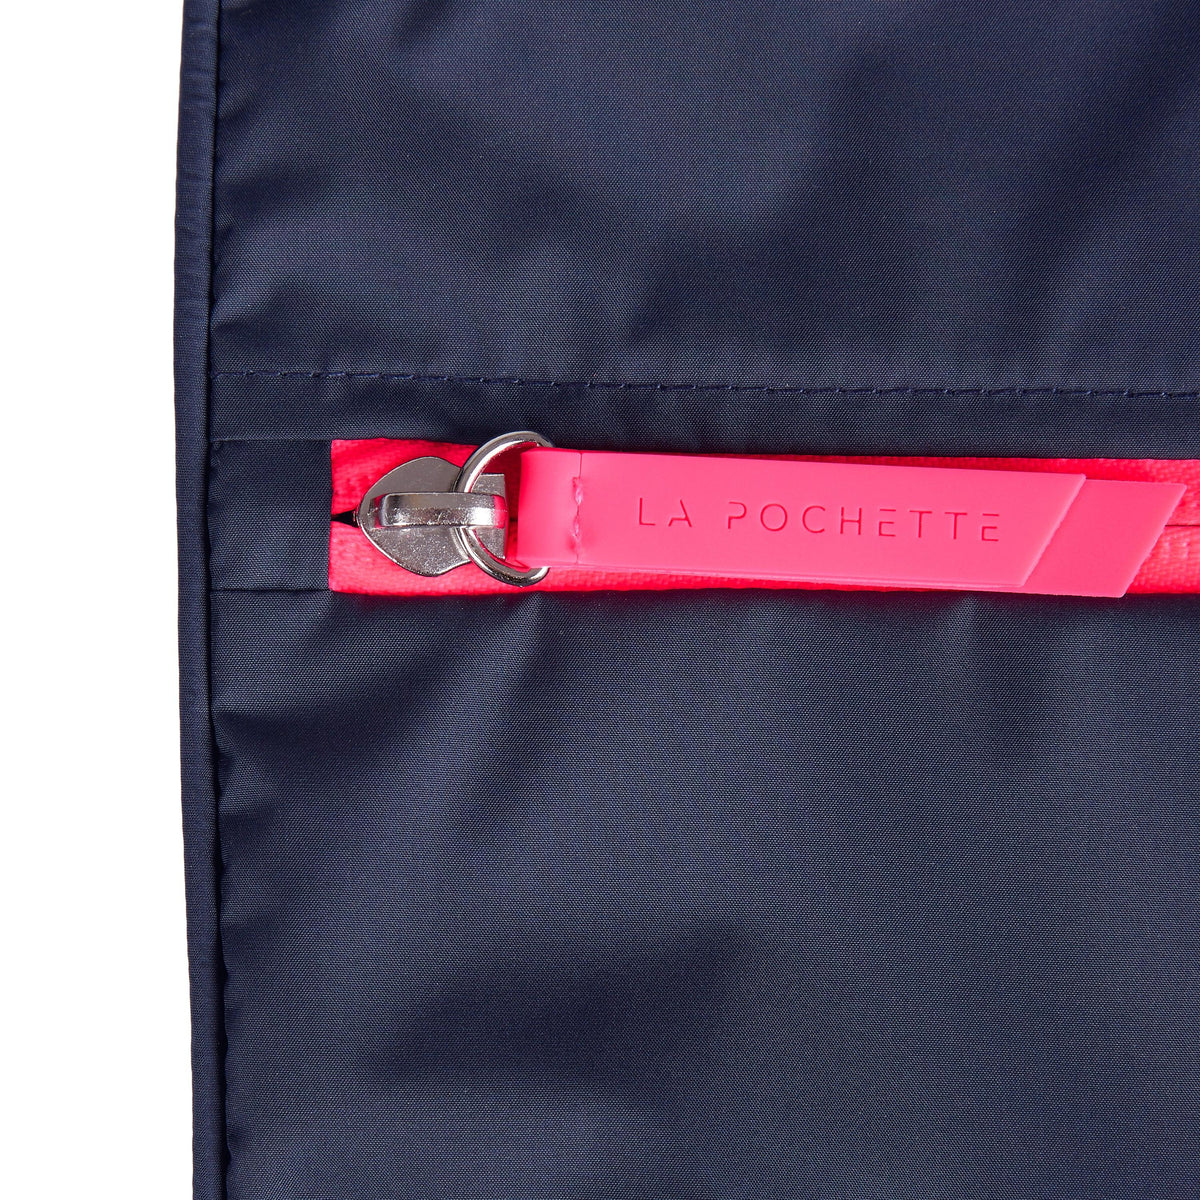 La Pochette zip detail Midnight Neon Pink Sweat Bag 